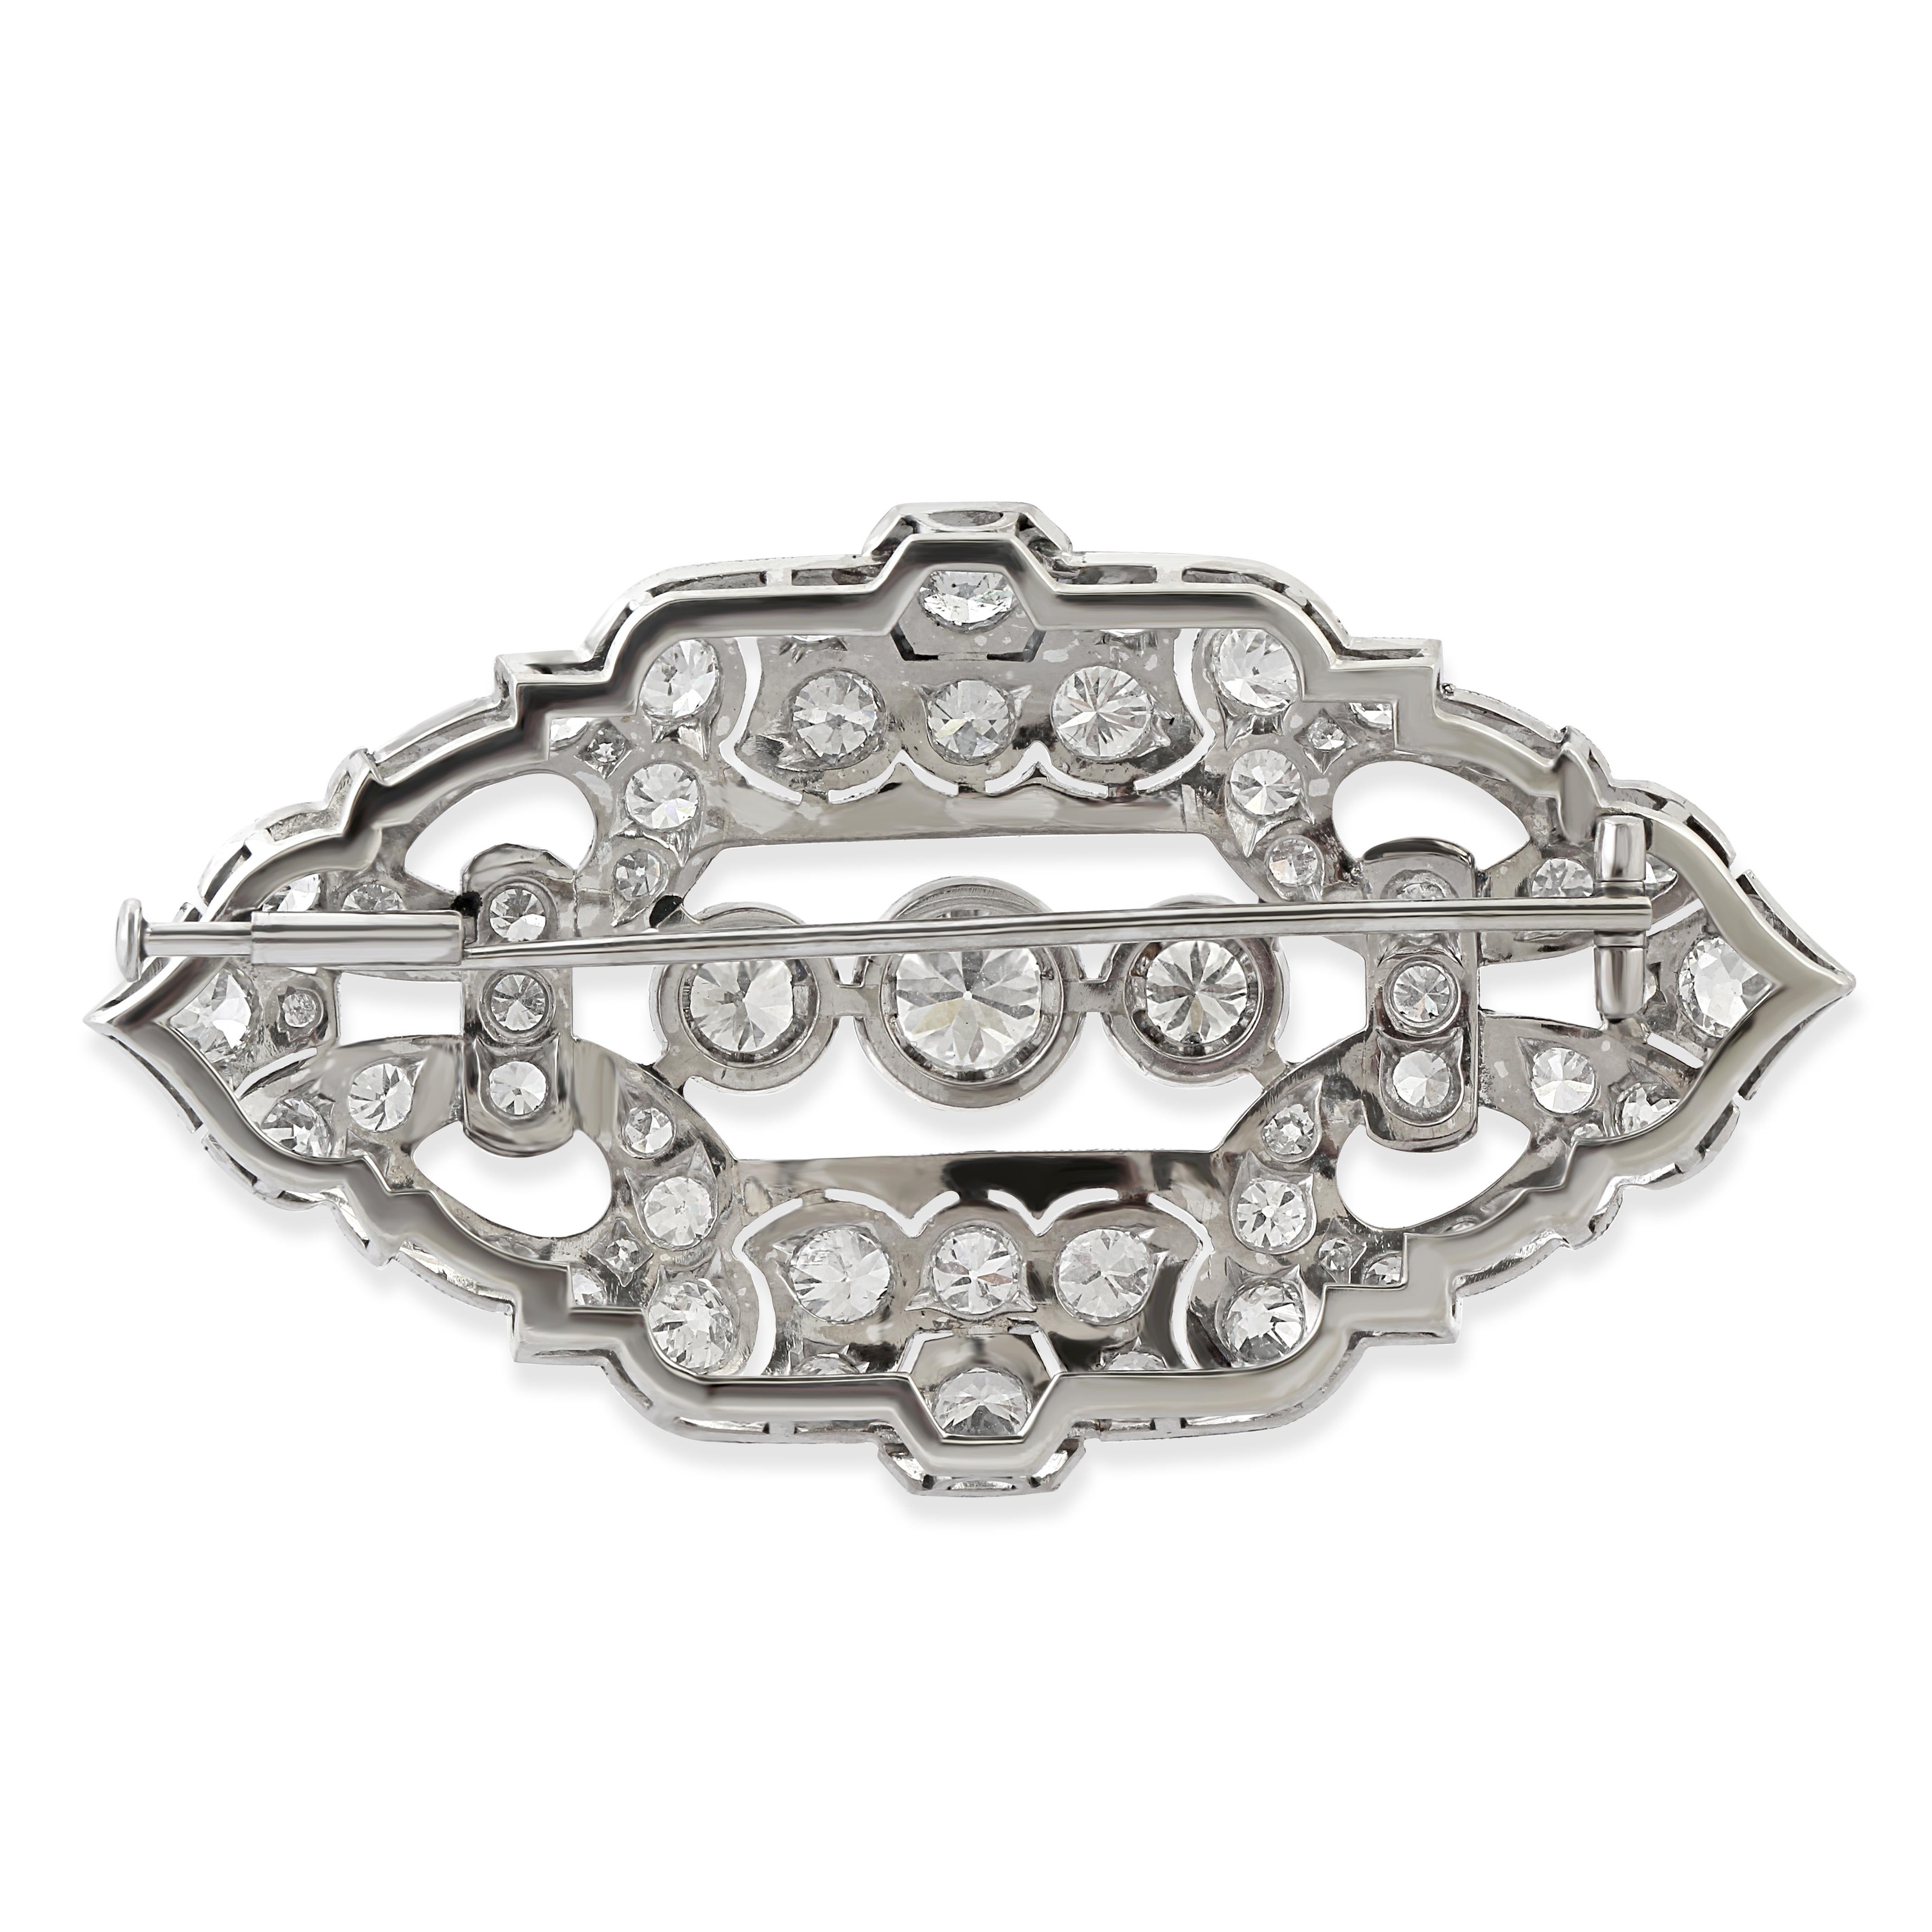 Eine durchbrochene, ovale, marquiseförmige Diamantbrosche aus den 1920er Jahren, die in der Mitte mit drei Diamanten im Kreisschliff besetzt ist.
